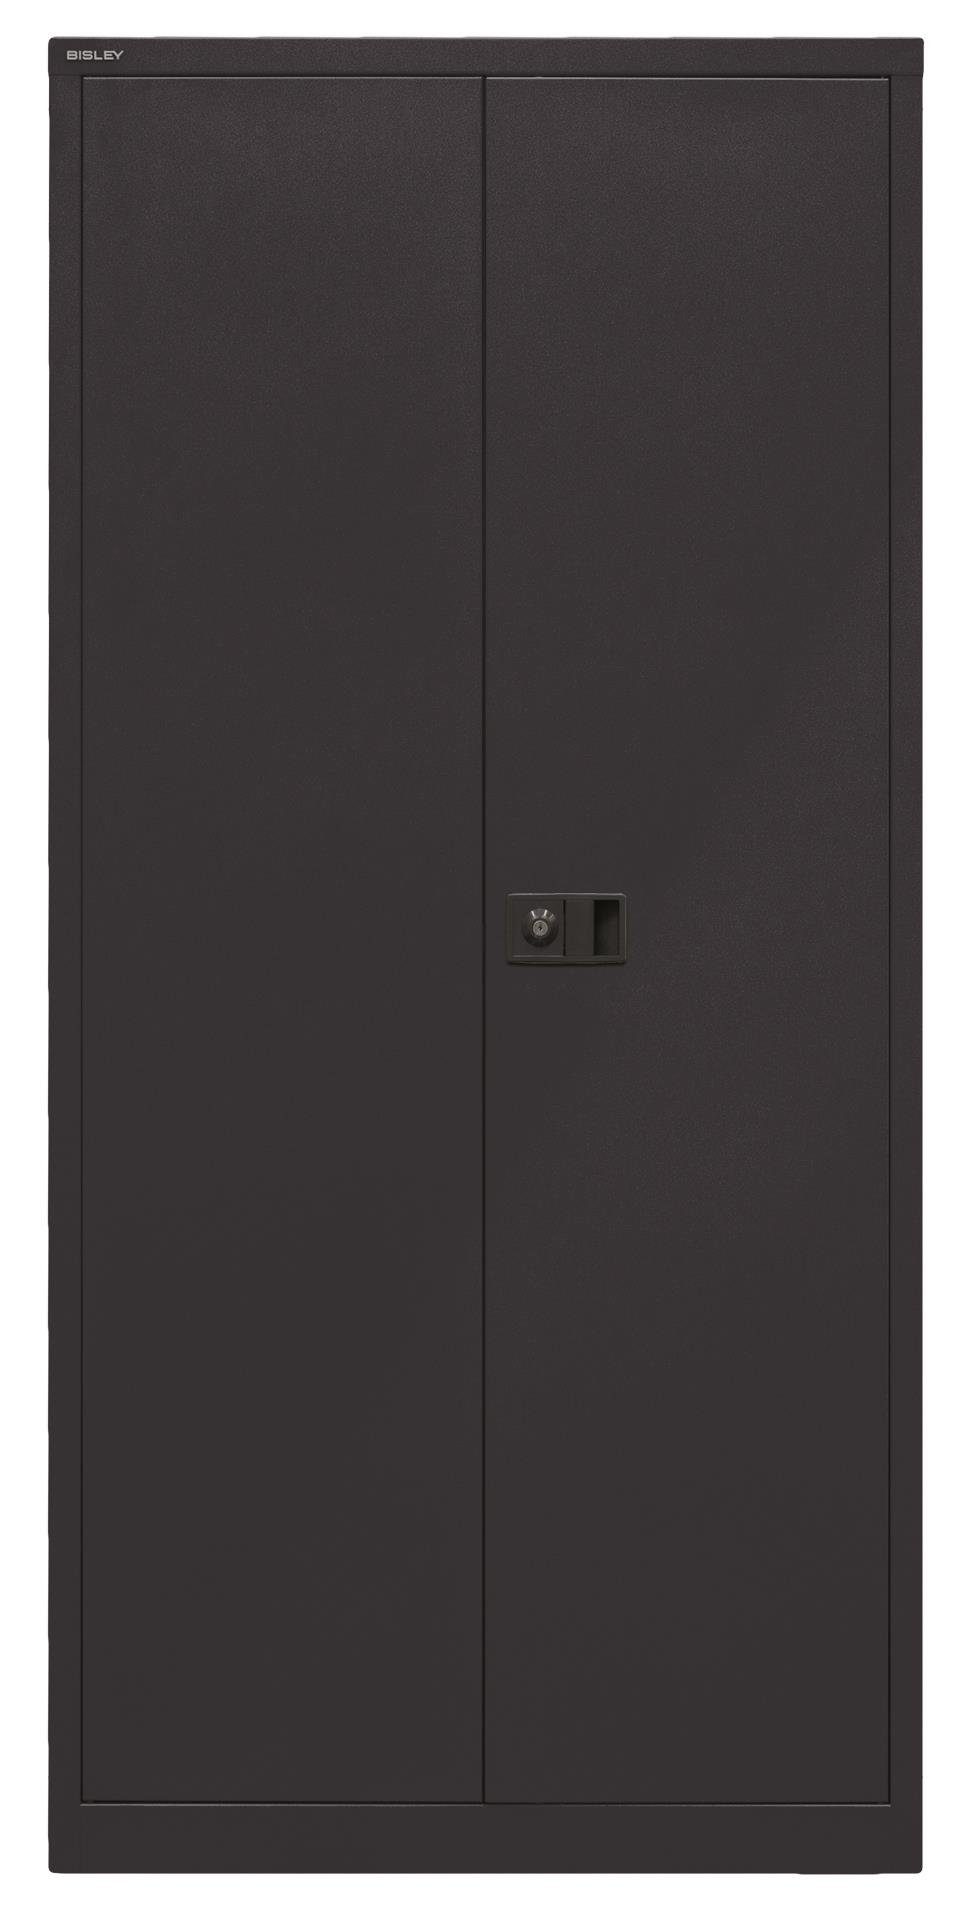 Bisley 633 Universal schwarz Garderobenschrank